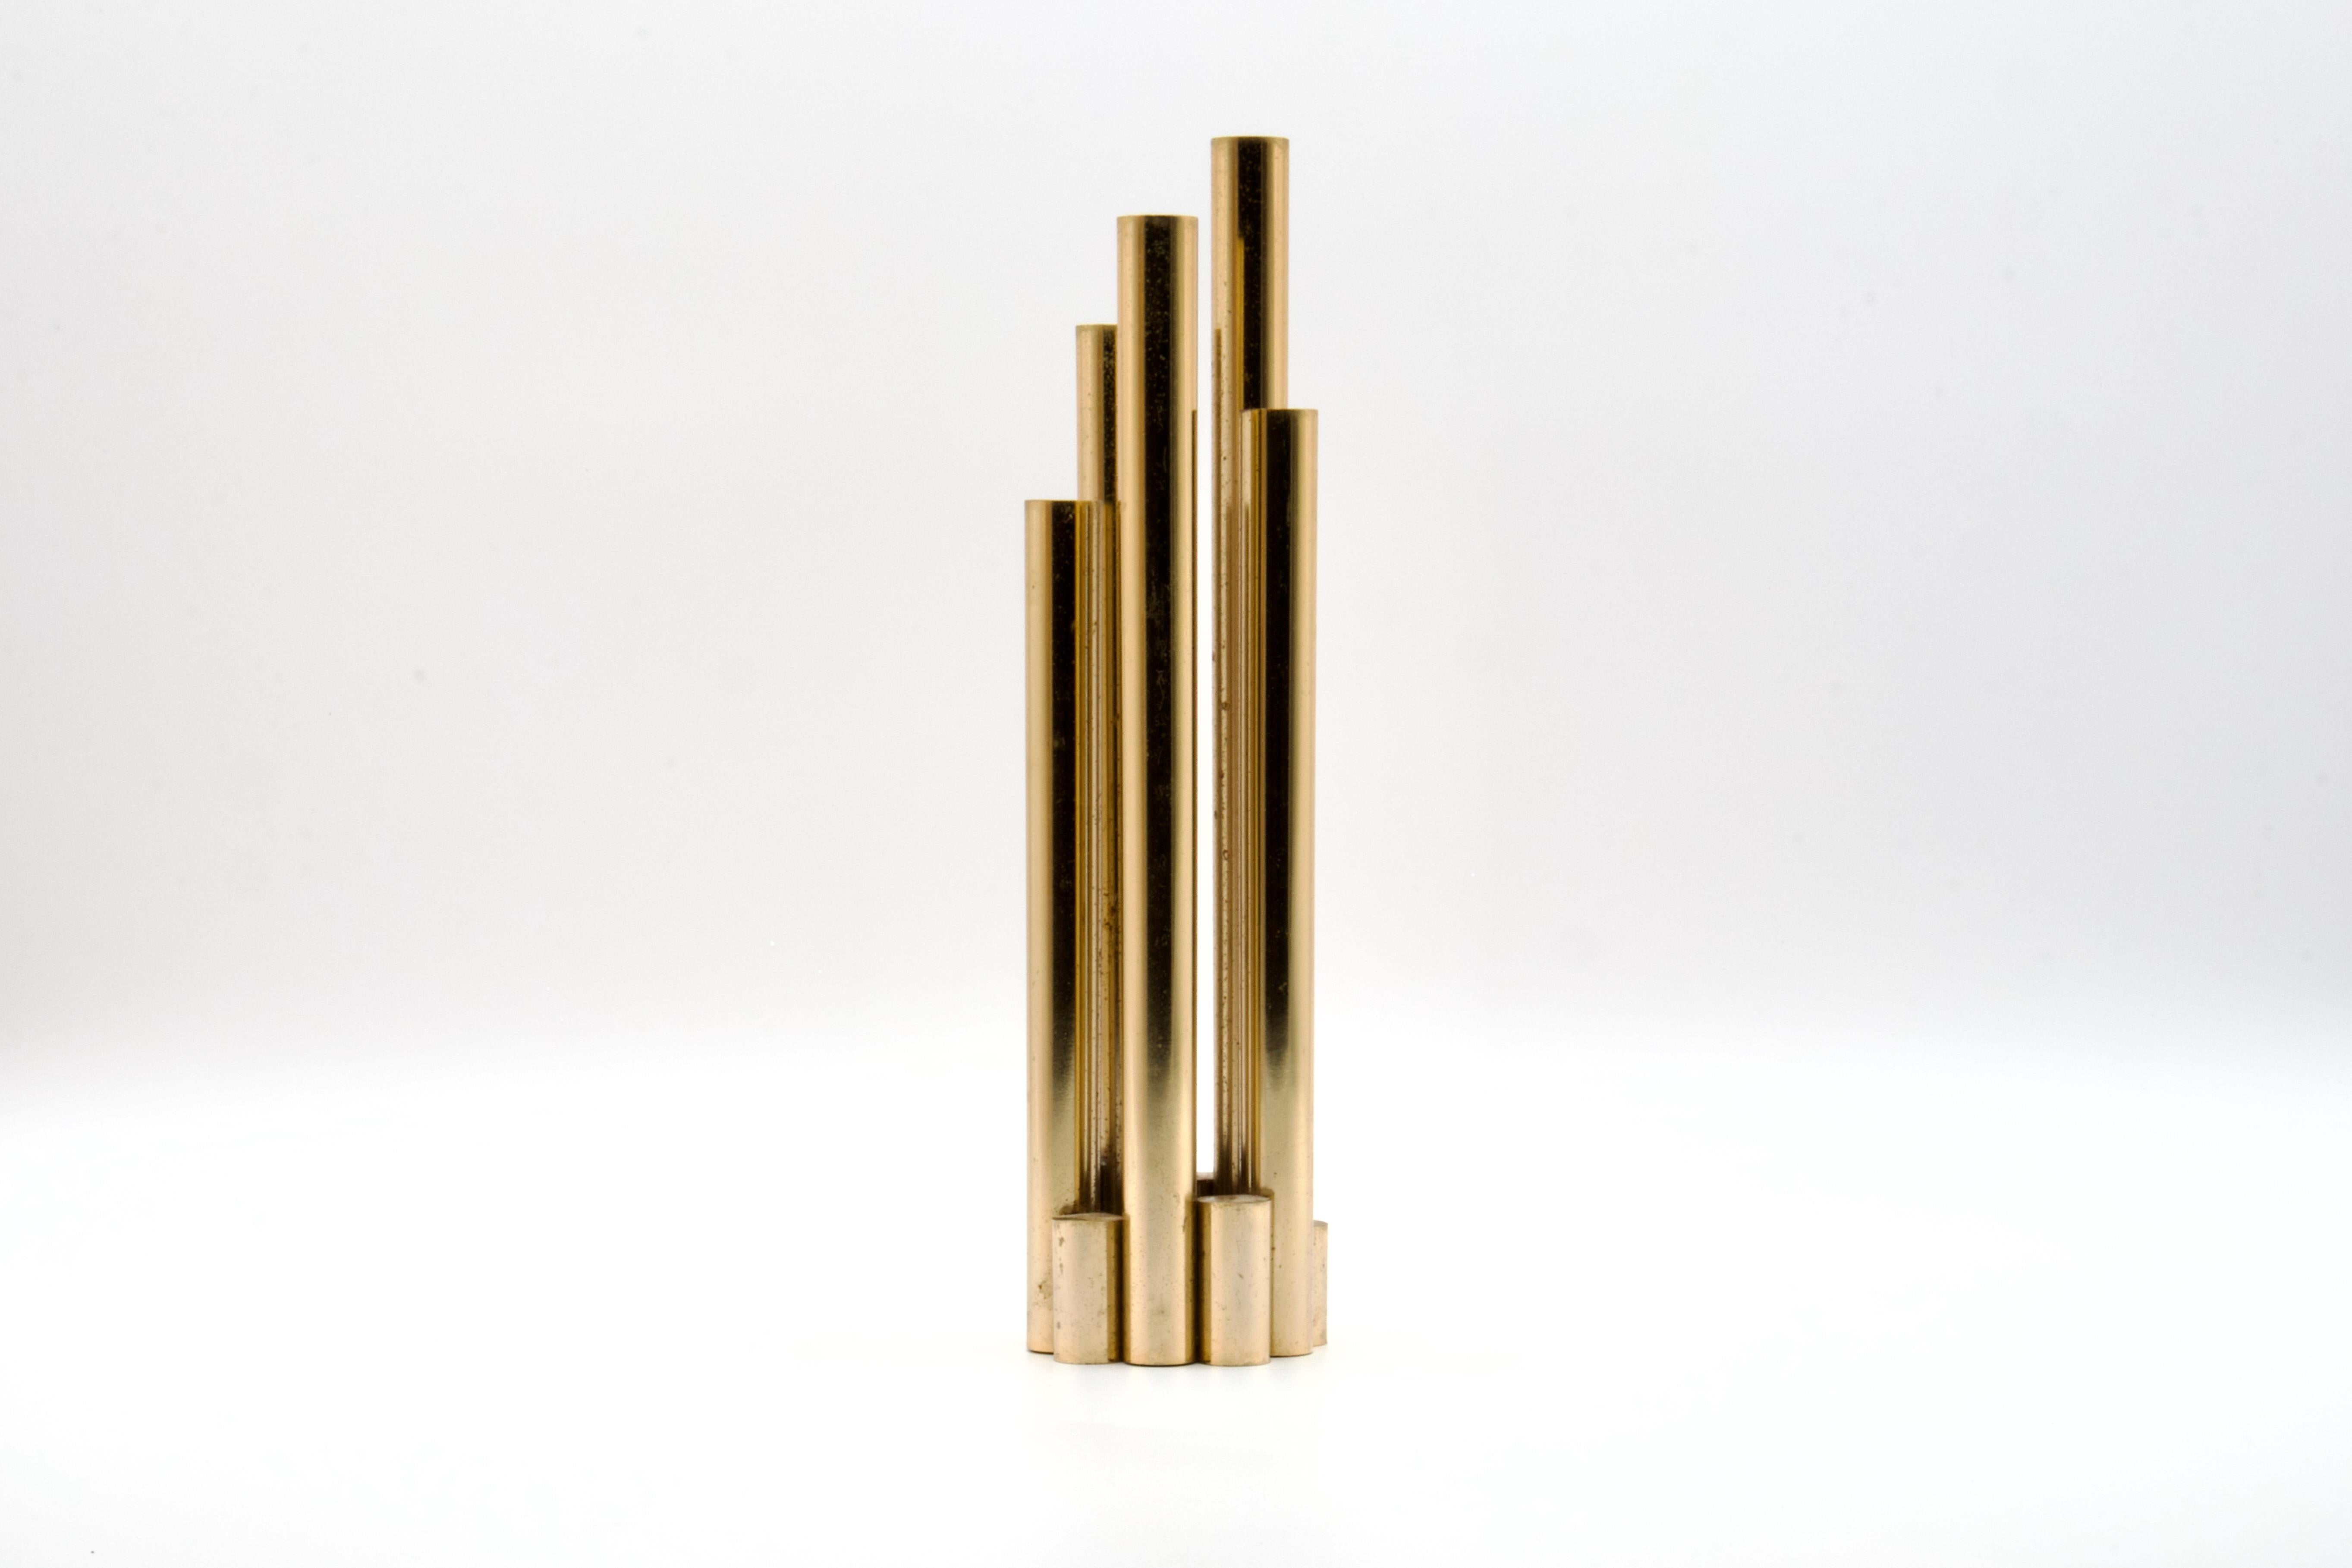 Superbe vase orgue de style moderne du milieu du siècle, sculpté à partir de tubes et de tiges de laiton, dans le style de Gio Ponti pour Christofle. D'origine italienne, il date du début des années 1960.

Le vase est constitué de 5 tubes en laiton